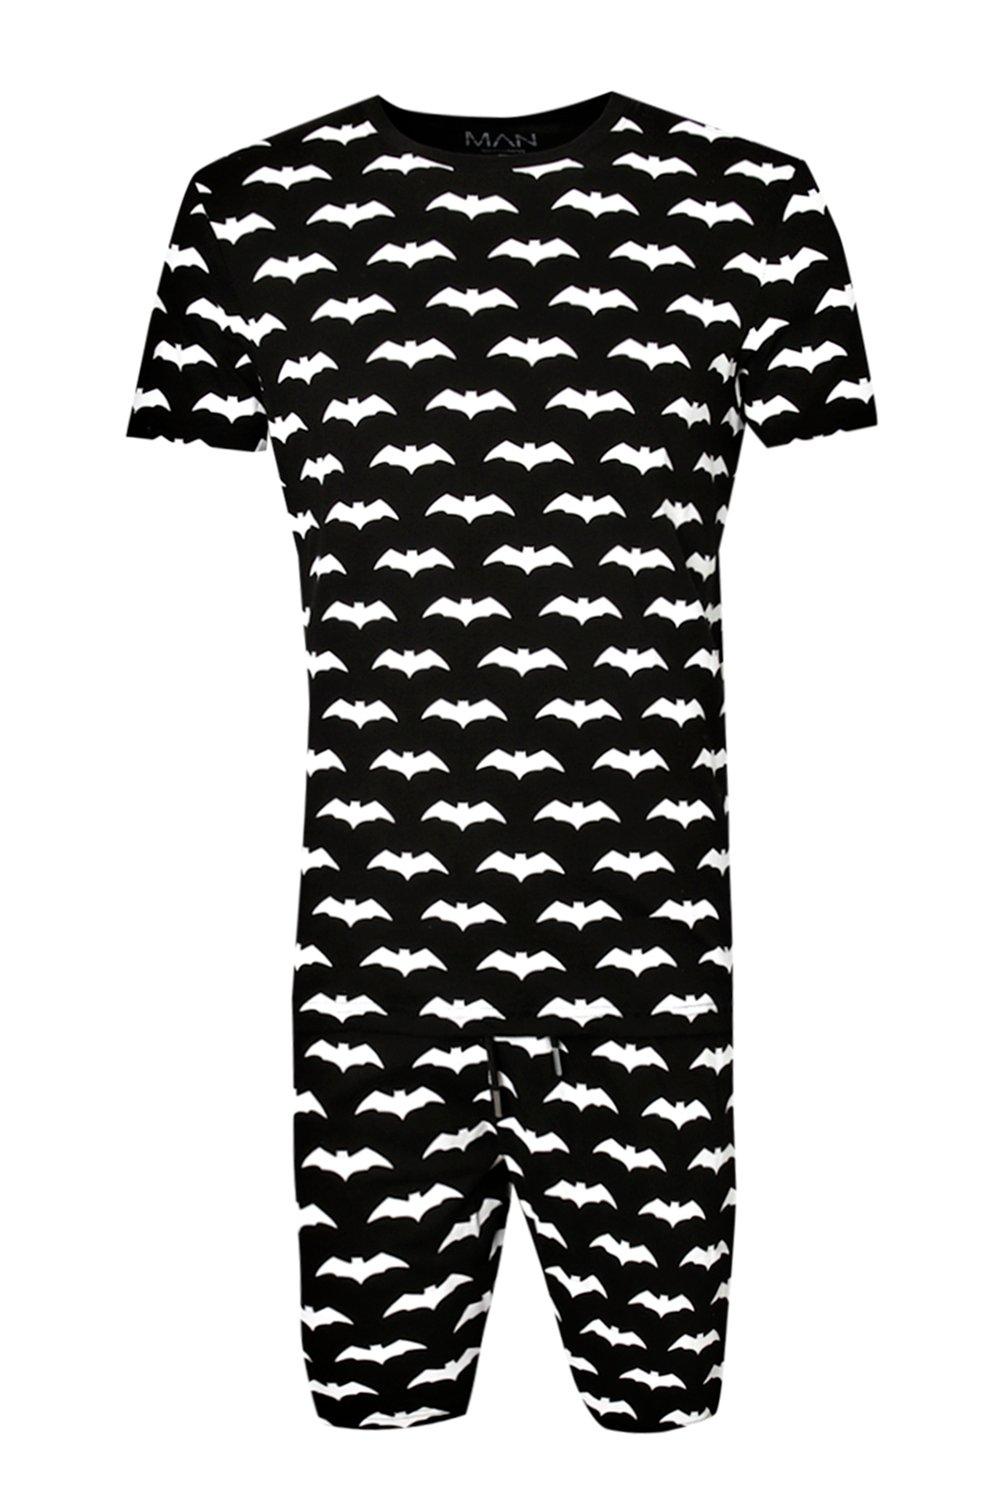 Desgracia Contratado Explícito Conjunto de pijama con estampado de murciélago para Halloween | boohoo